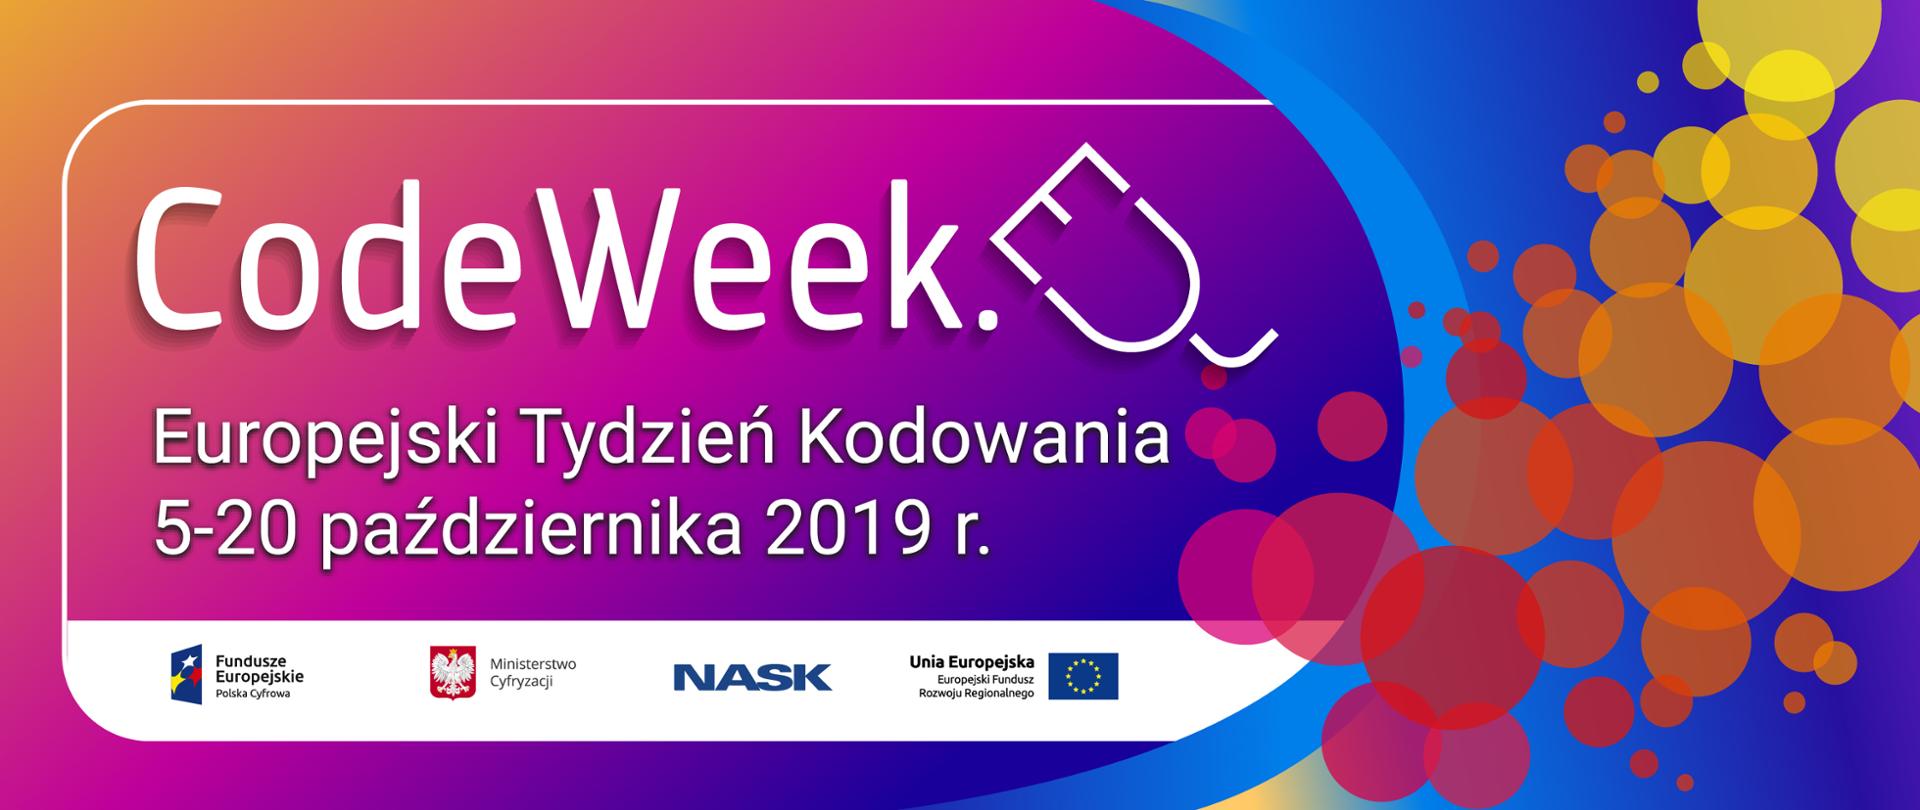 Ilustracja zawiera napis: CodeWeek. Europejski Tydzień Kodowania 5-20 października 2019 r. Wszyscy gotowi? Można zaczynać! Znamy datę #CodeWeek2019.